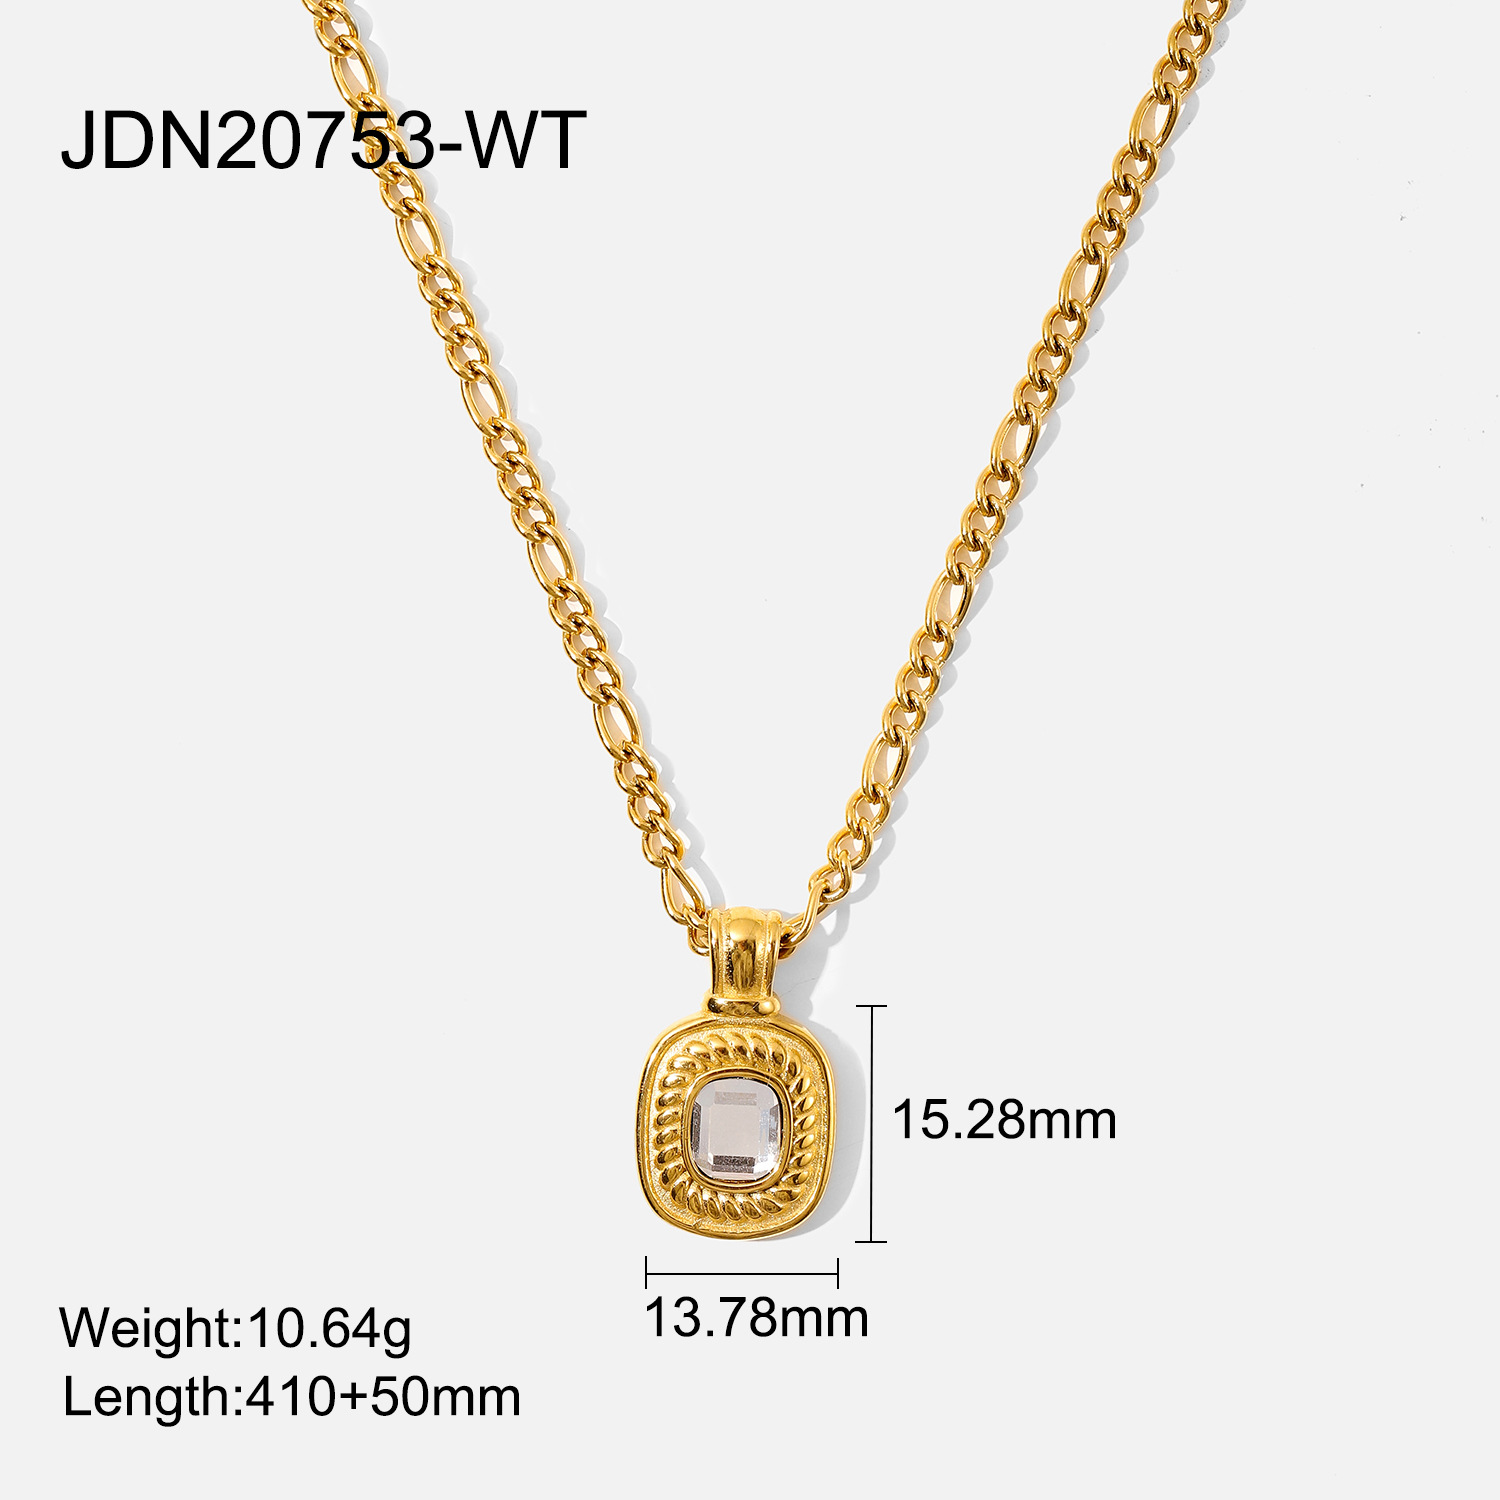 JDN20753-WT